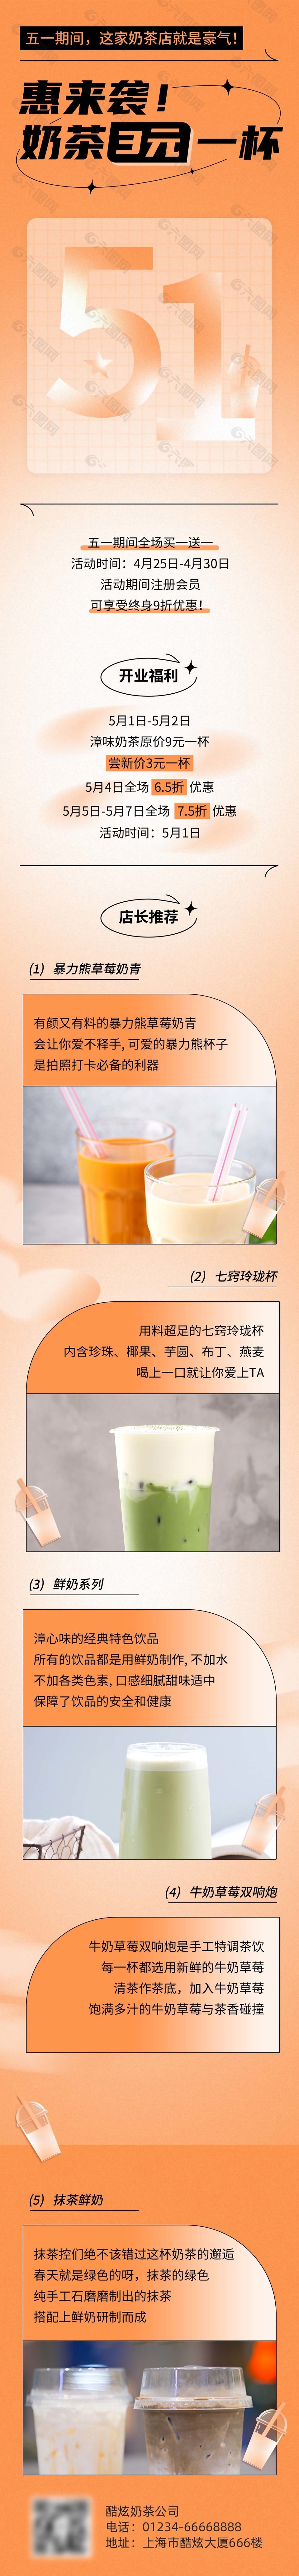 奶茶店开业福利宣传长图模板